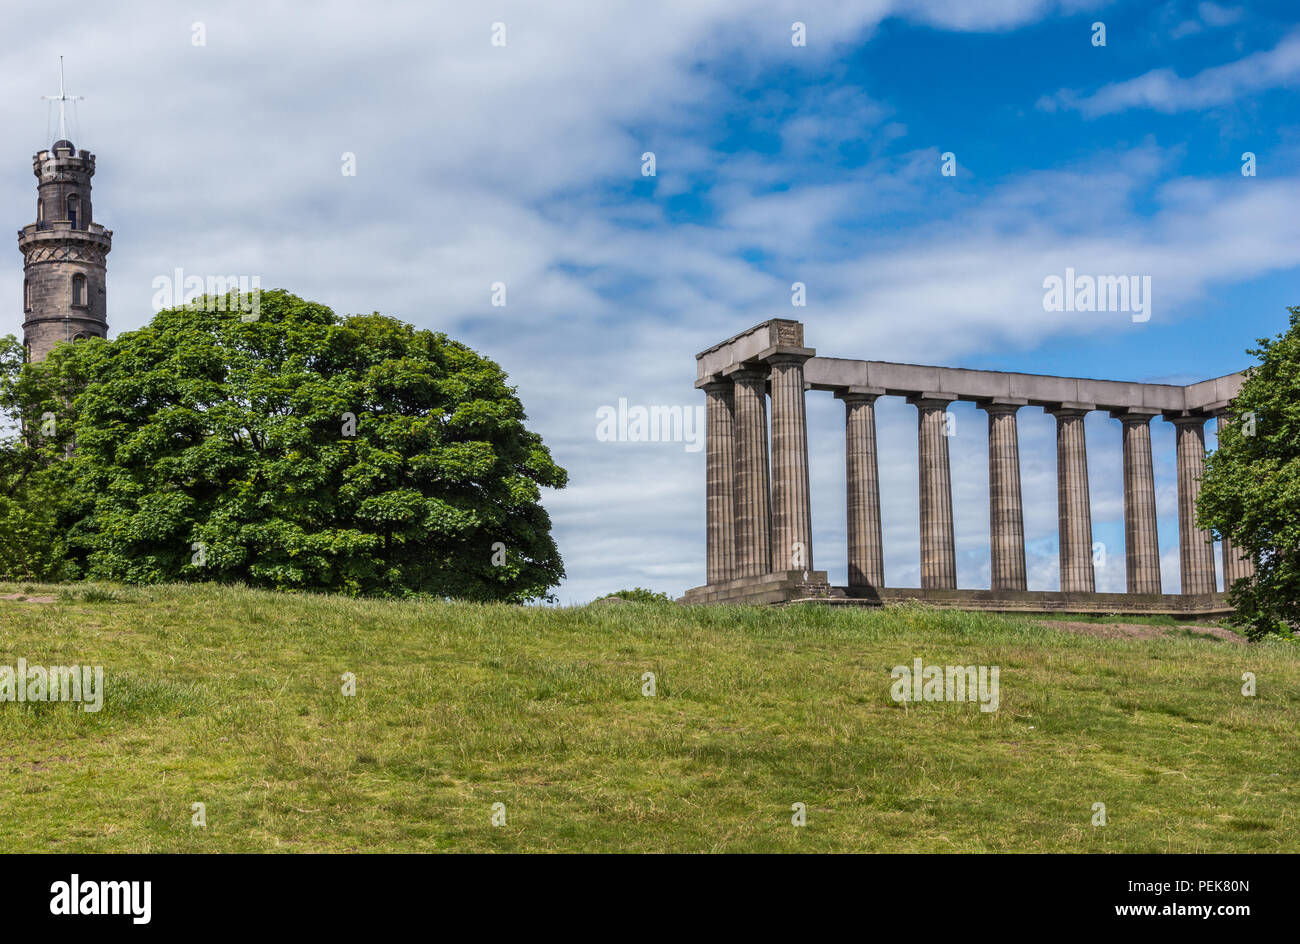 Edimburgo, Escocia, Reino Unido - 13 de junio de 2012: Nelson y Monumentos Nacionales sobre Calton Hill capturados entre el verde de los árboles detrás de césped verde y azul bajo cl Foto de stock